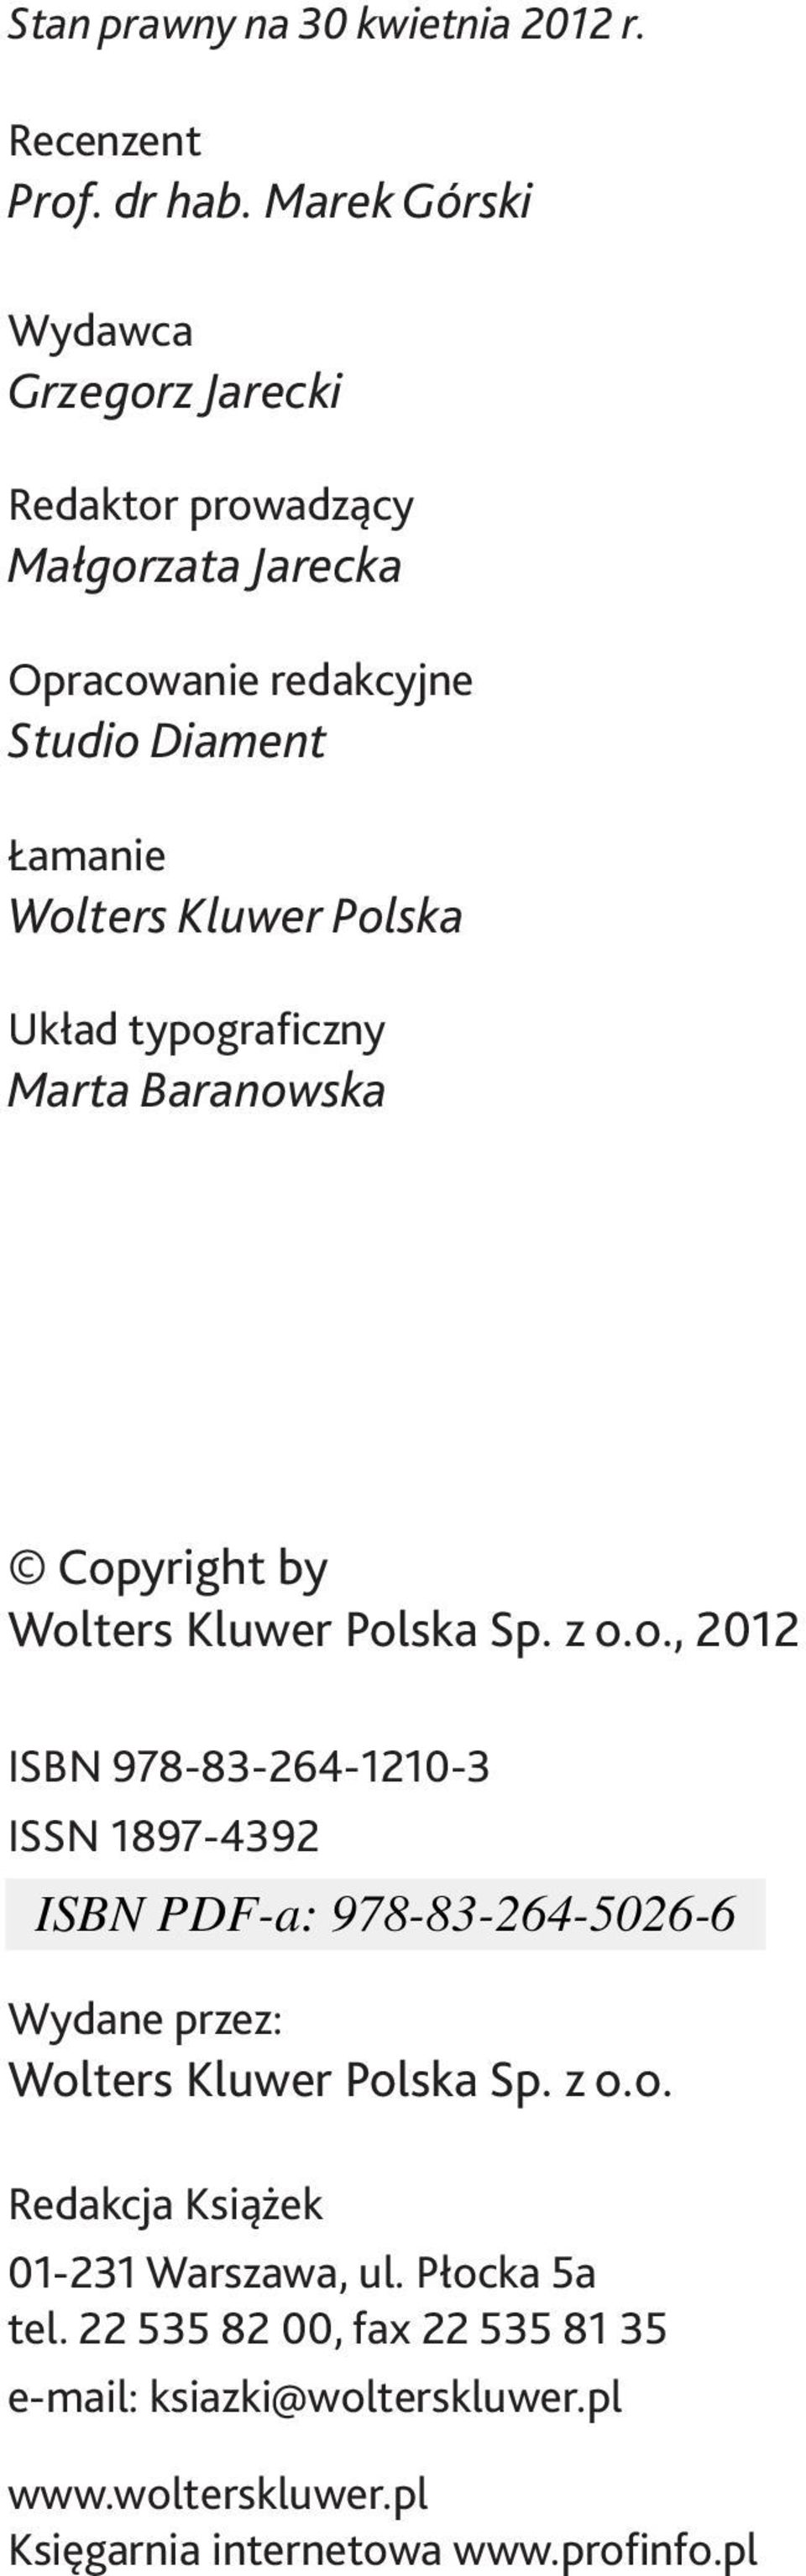 Polska Układ typograficzny Marta Baranowska Copyright by Wolters Kluwer Polska Sp. z o.o., 2012 ISBN 978-83-264-1210-3 ISSN 1897-4392 Wydane przez: Wolters Kluwer Polska Sp.